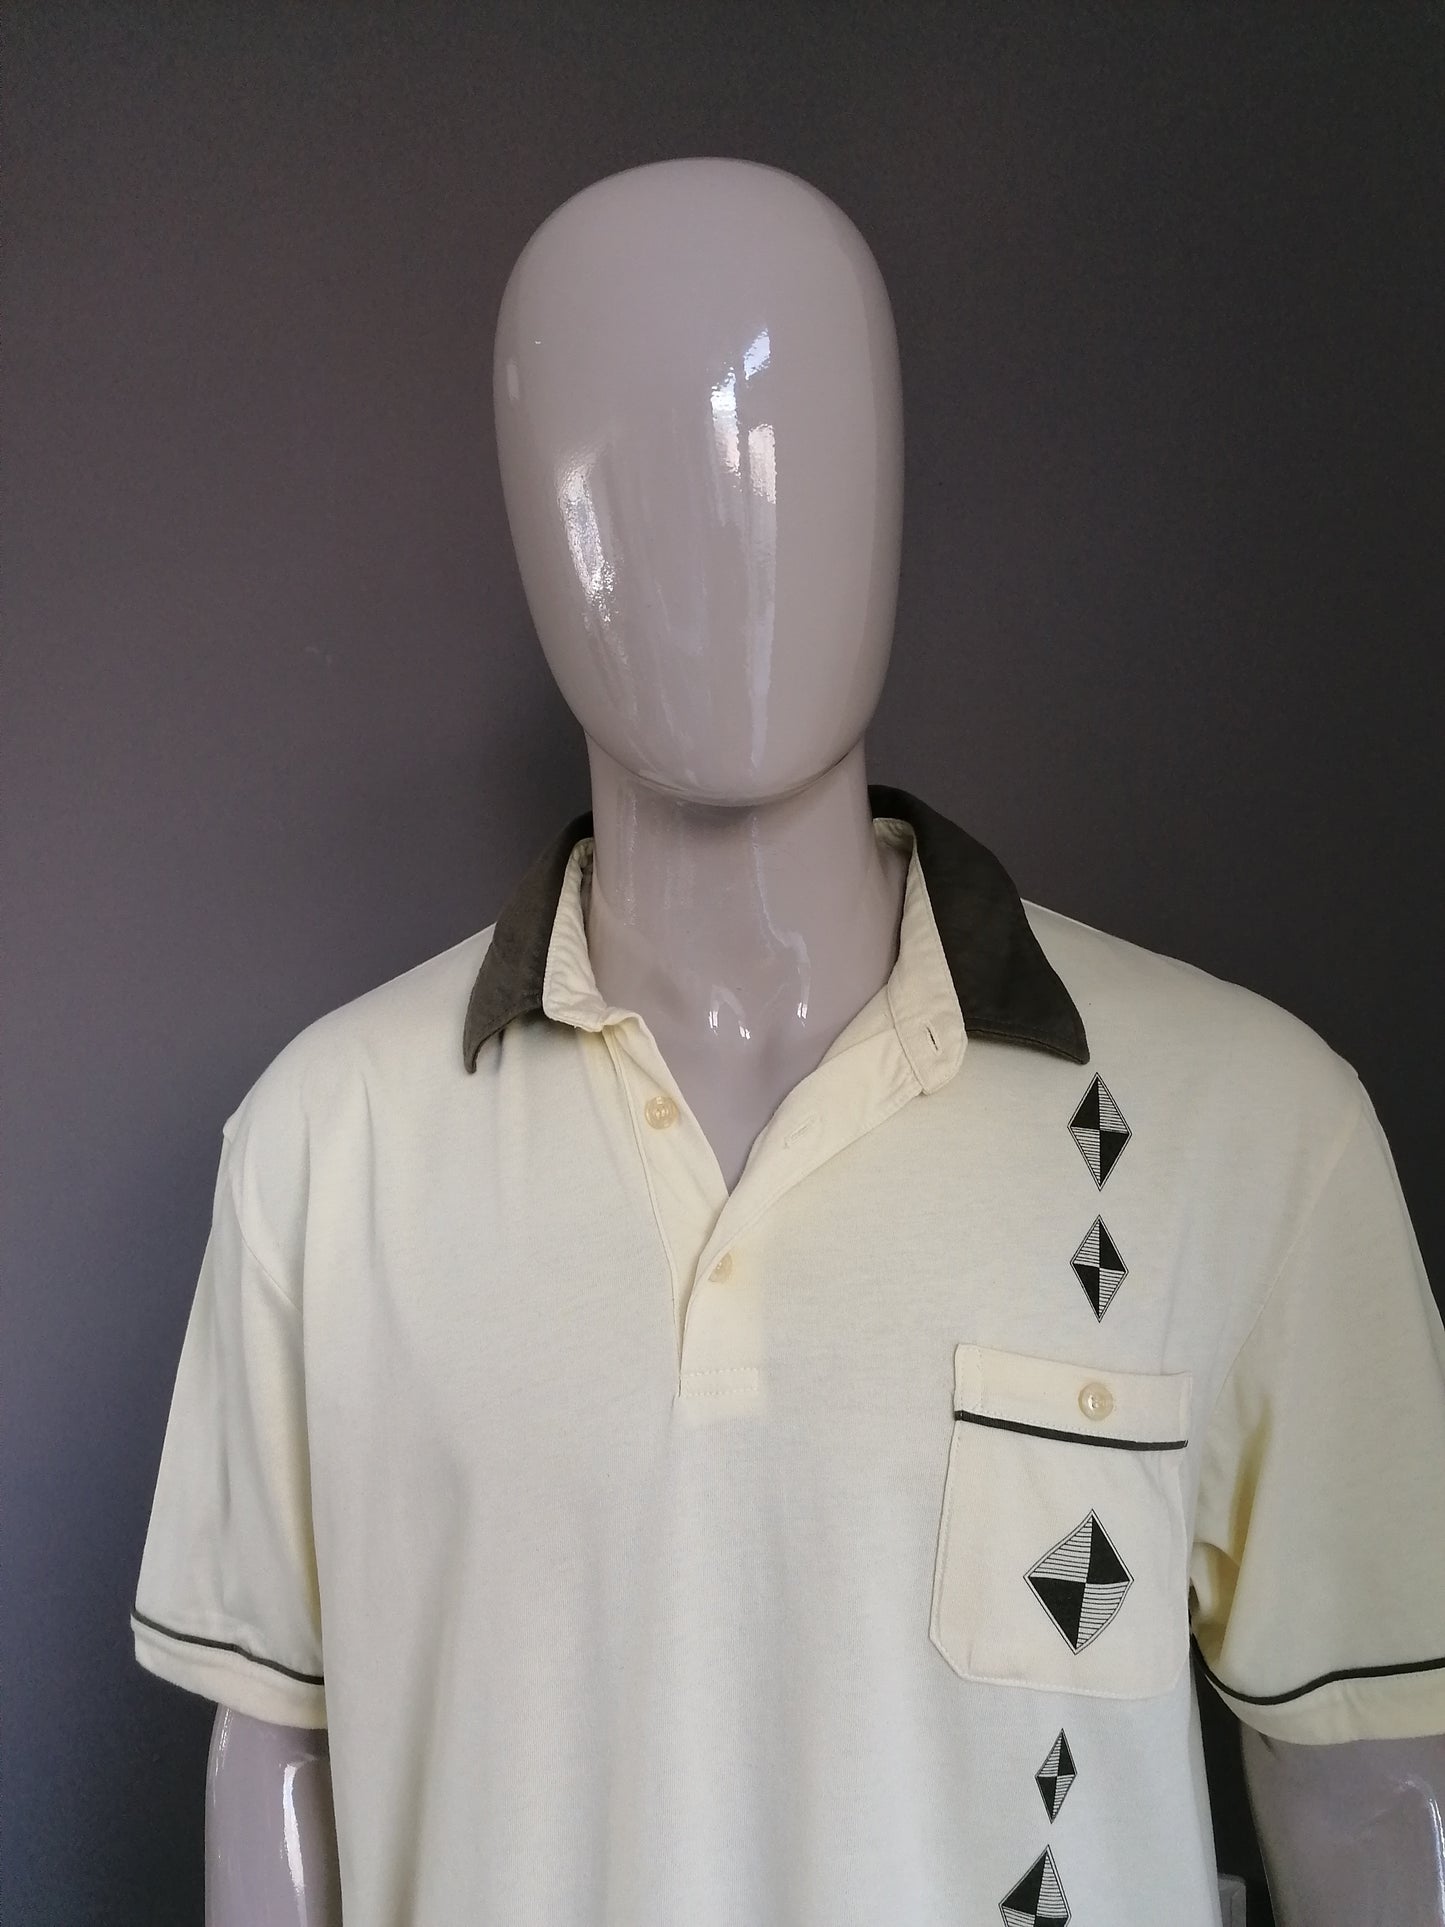 Vintage Roger connaît Polo avec poche de poitrine et bande élastique. Couleur vert jaune. Taille XL / XXL